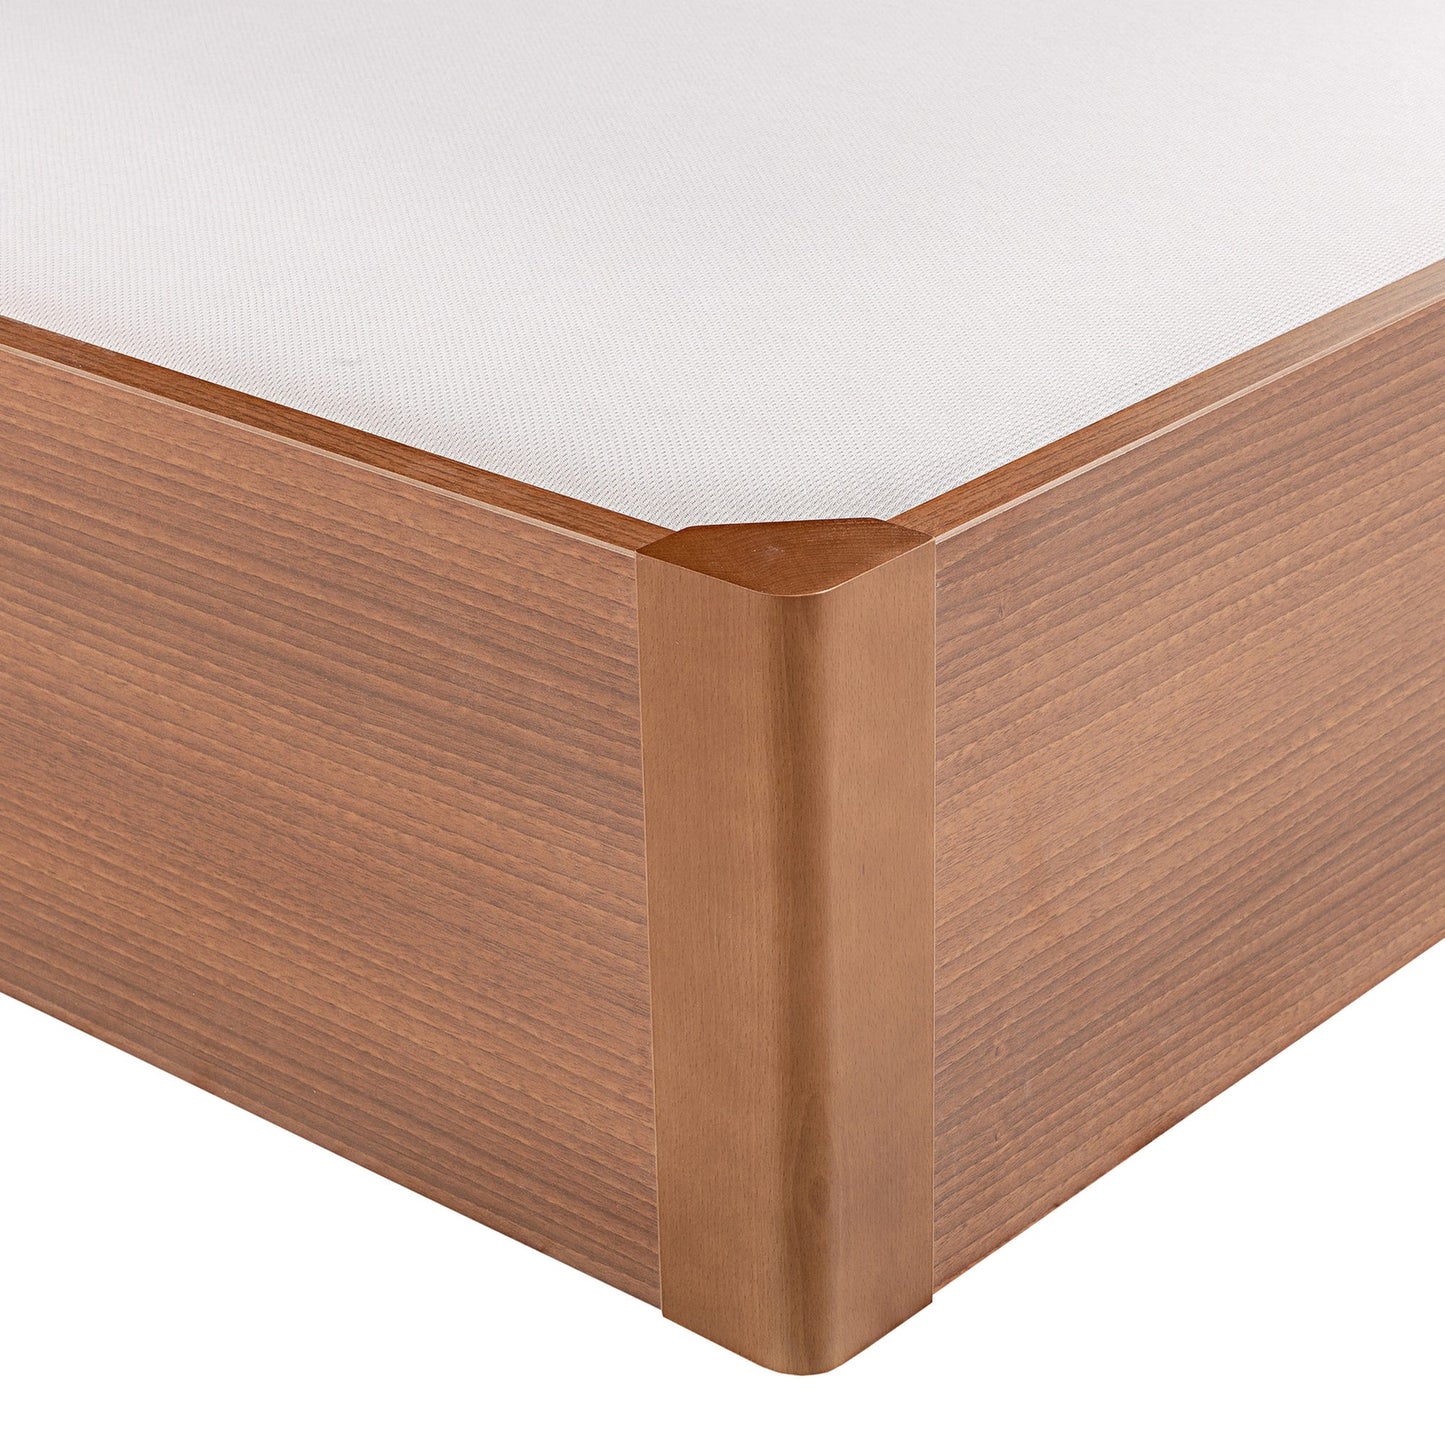 Canapé abatible de madera tapa única de color cerezo - DESIGN - 140x200